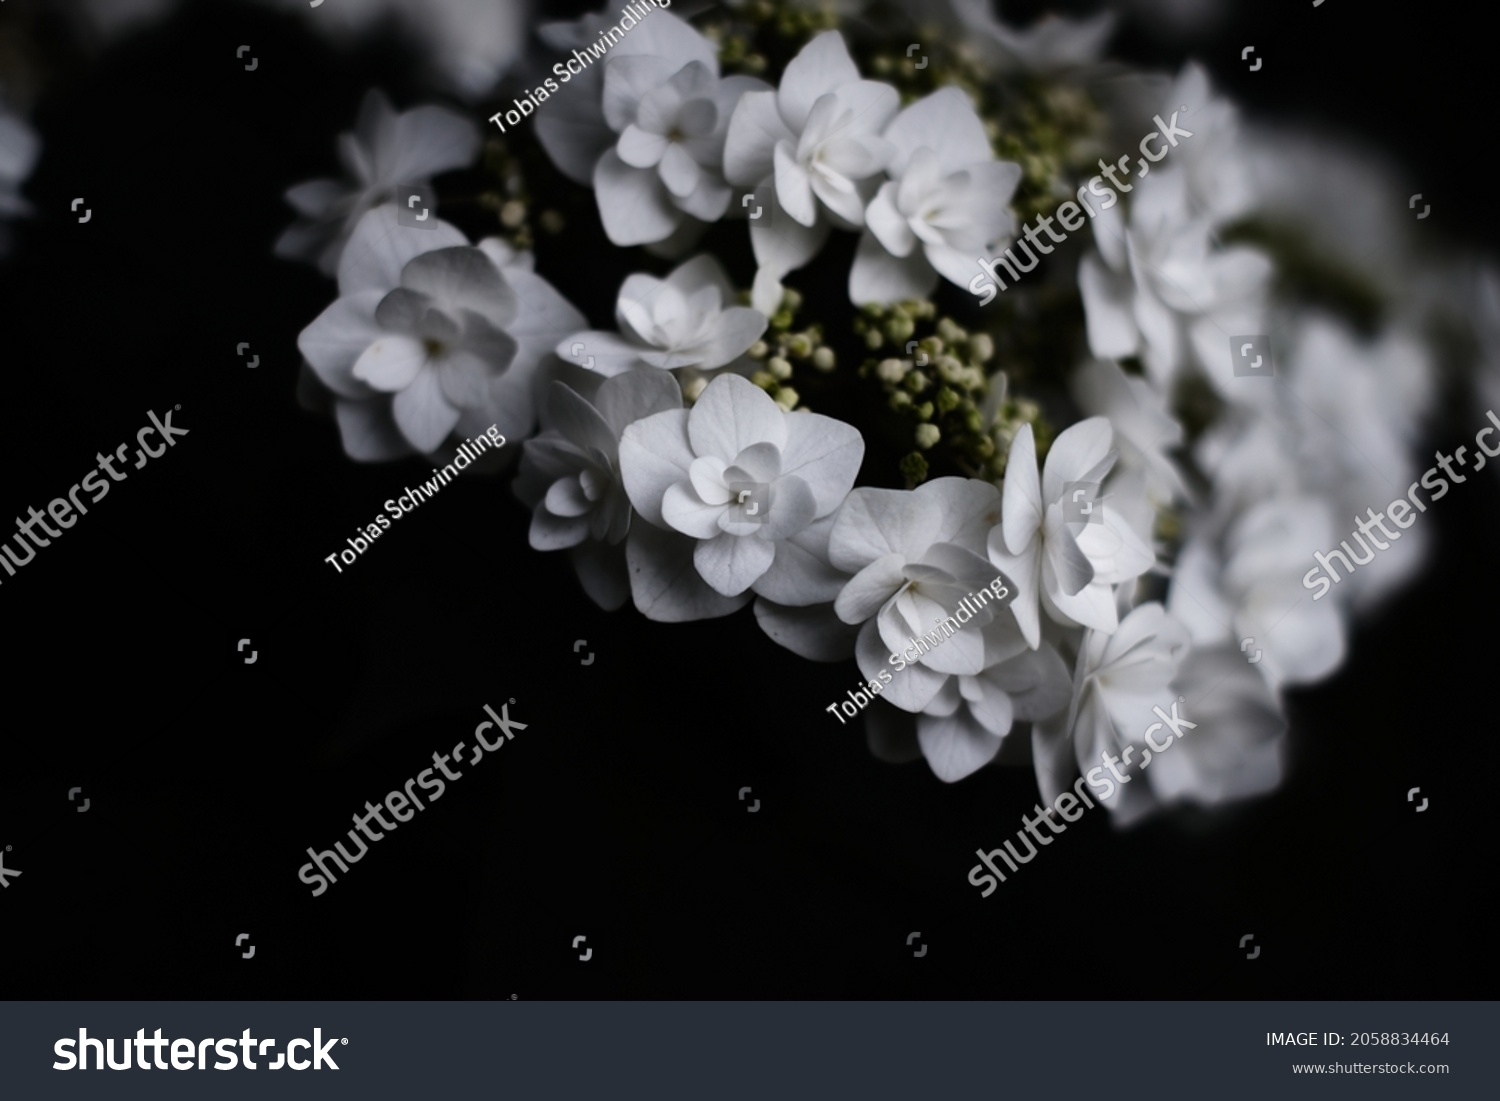 13 White hydranga background Stock Photos, Images & Photography ...